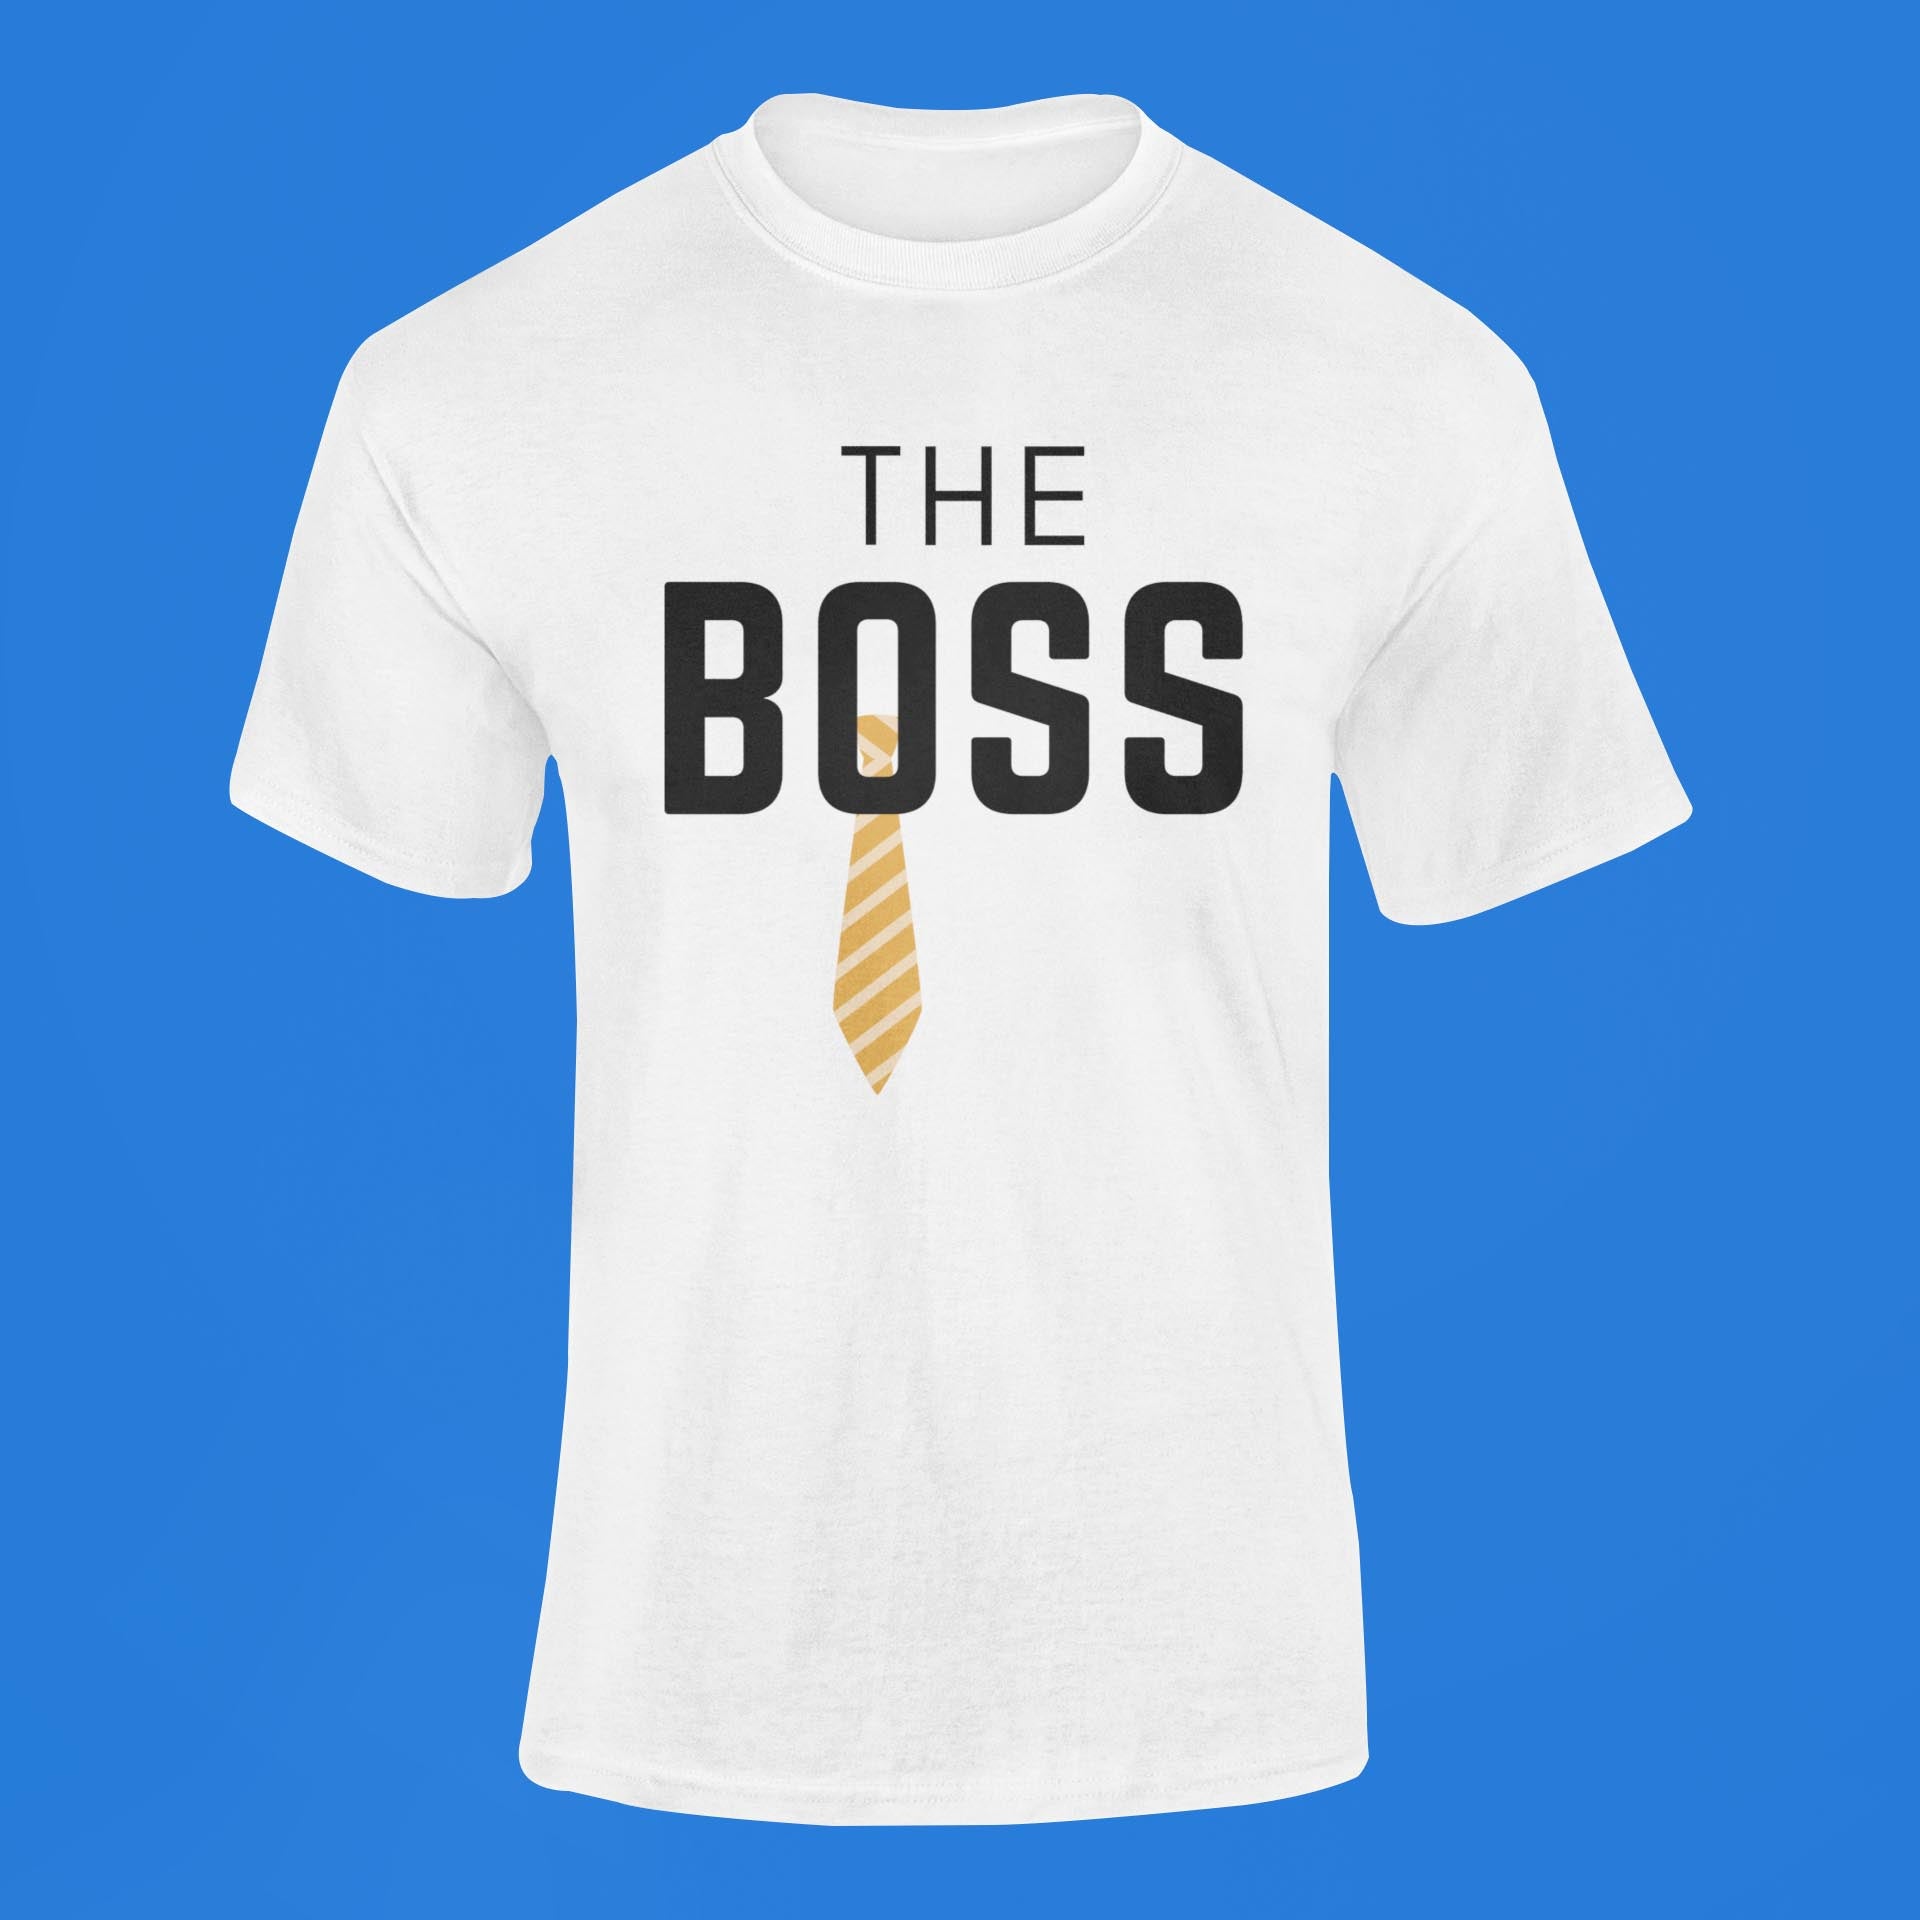 The Bose Men's Cotton T-Shirt